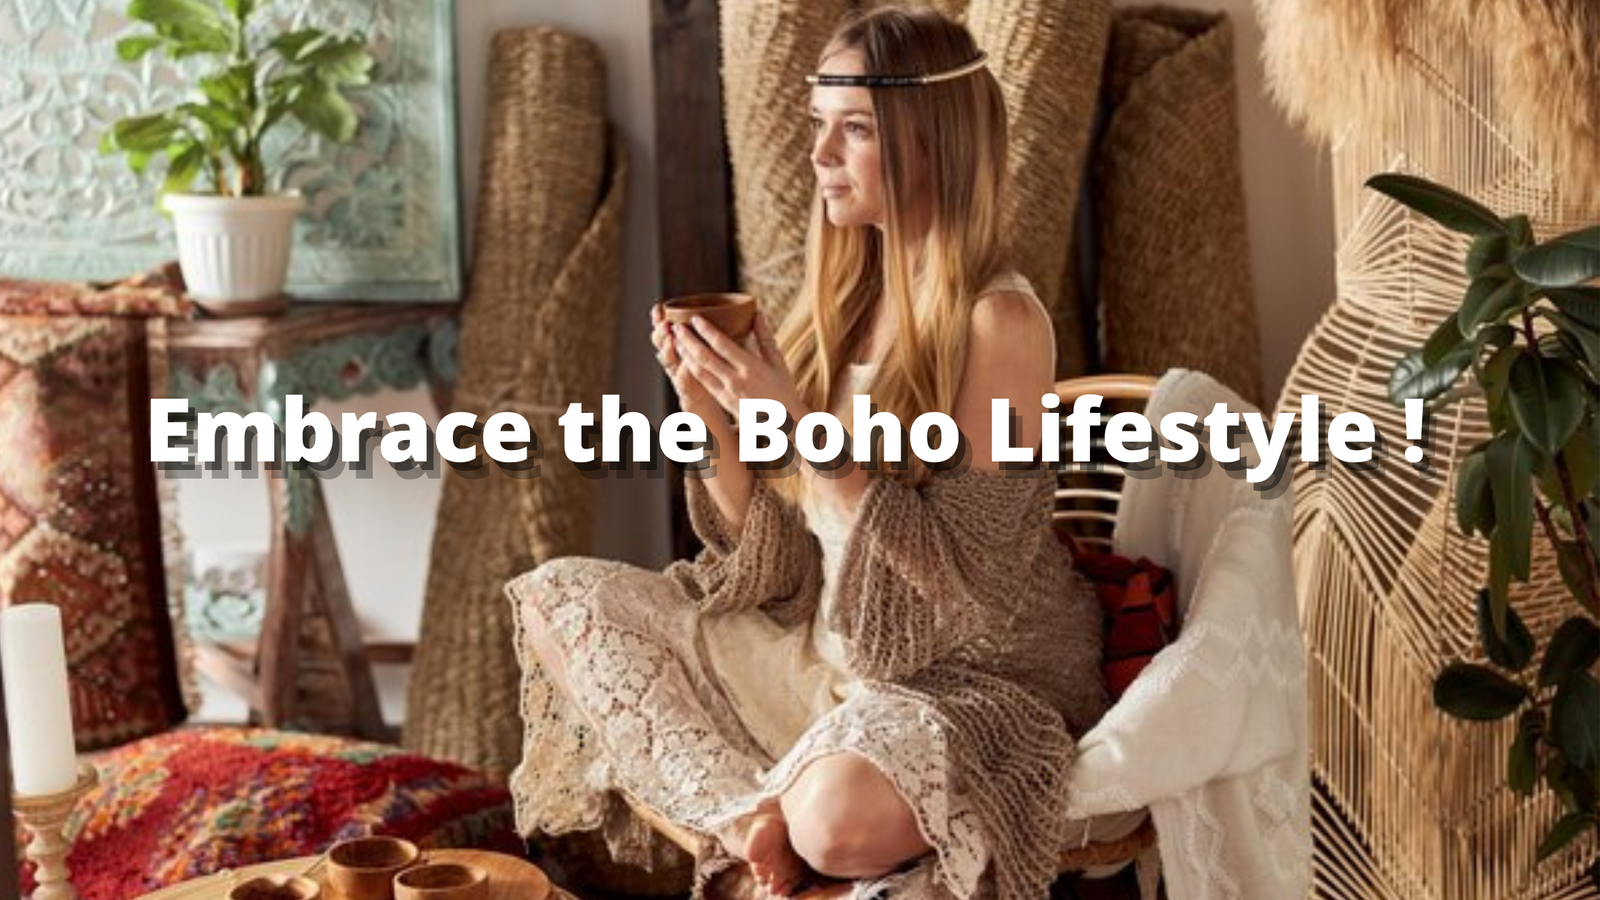 The Boho Lifestyle, How to Embrace it? - Boho Mood